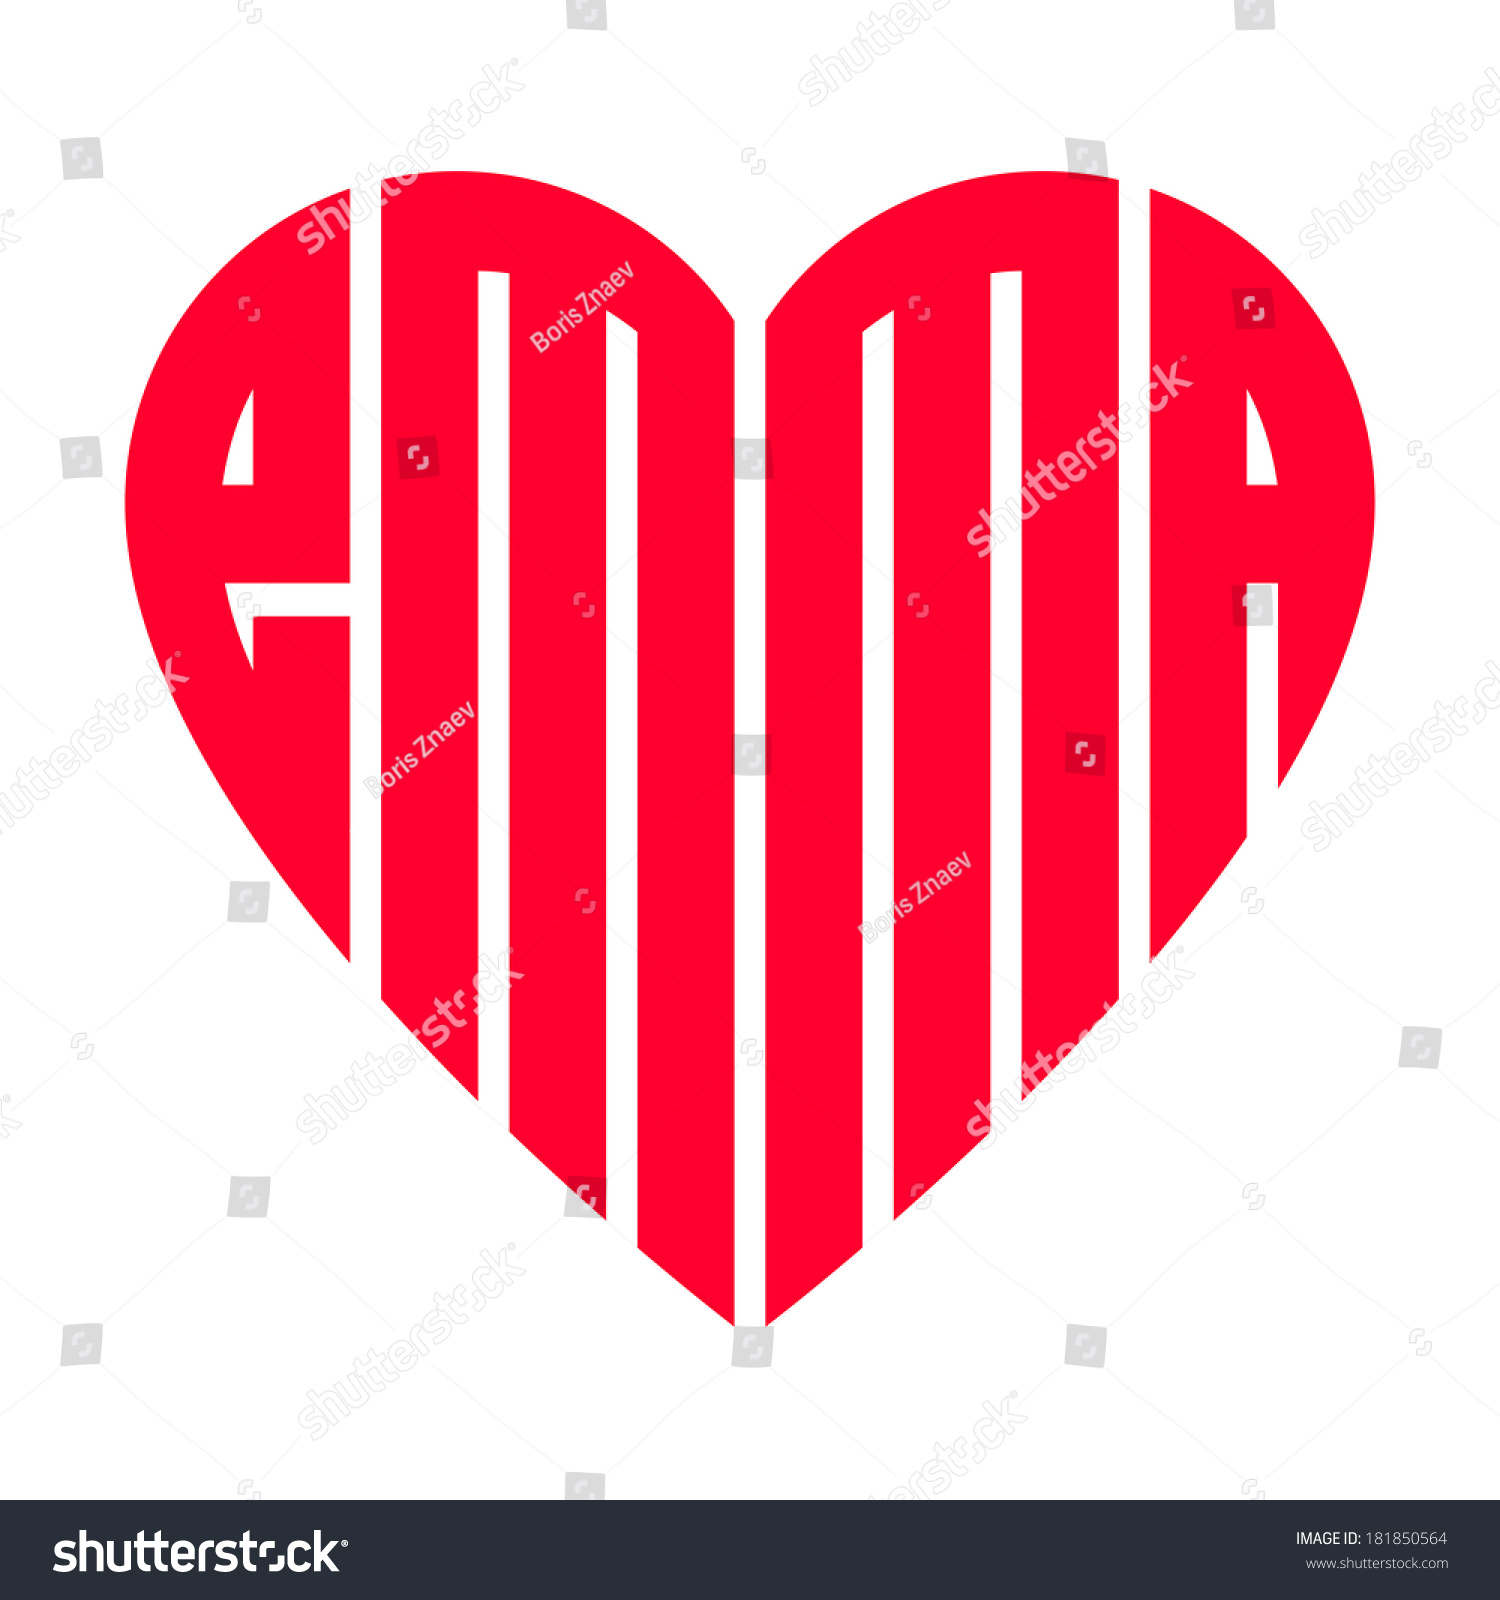 Popular Female Name Emma Heart Stock Illustration 181850564 Shutterstock